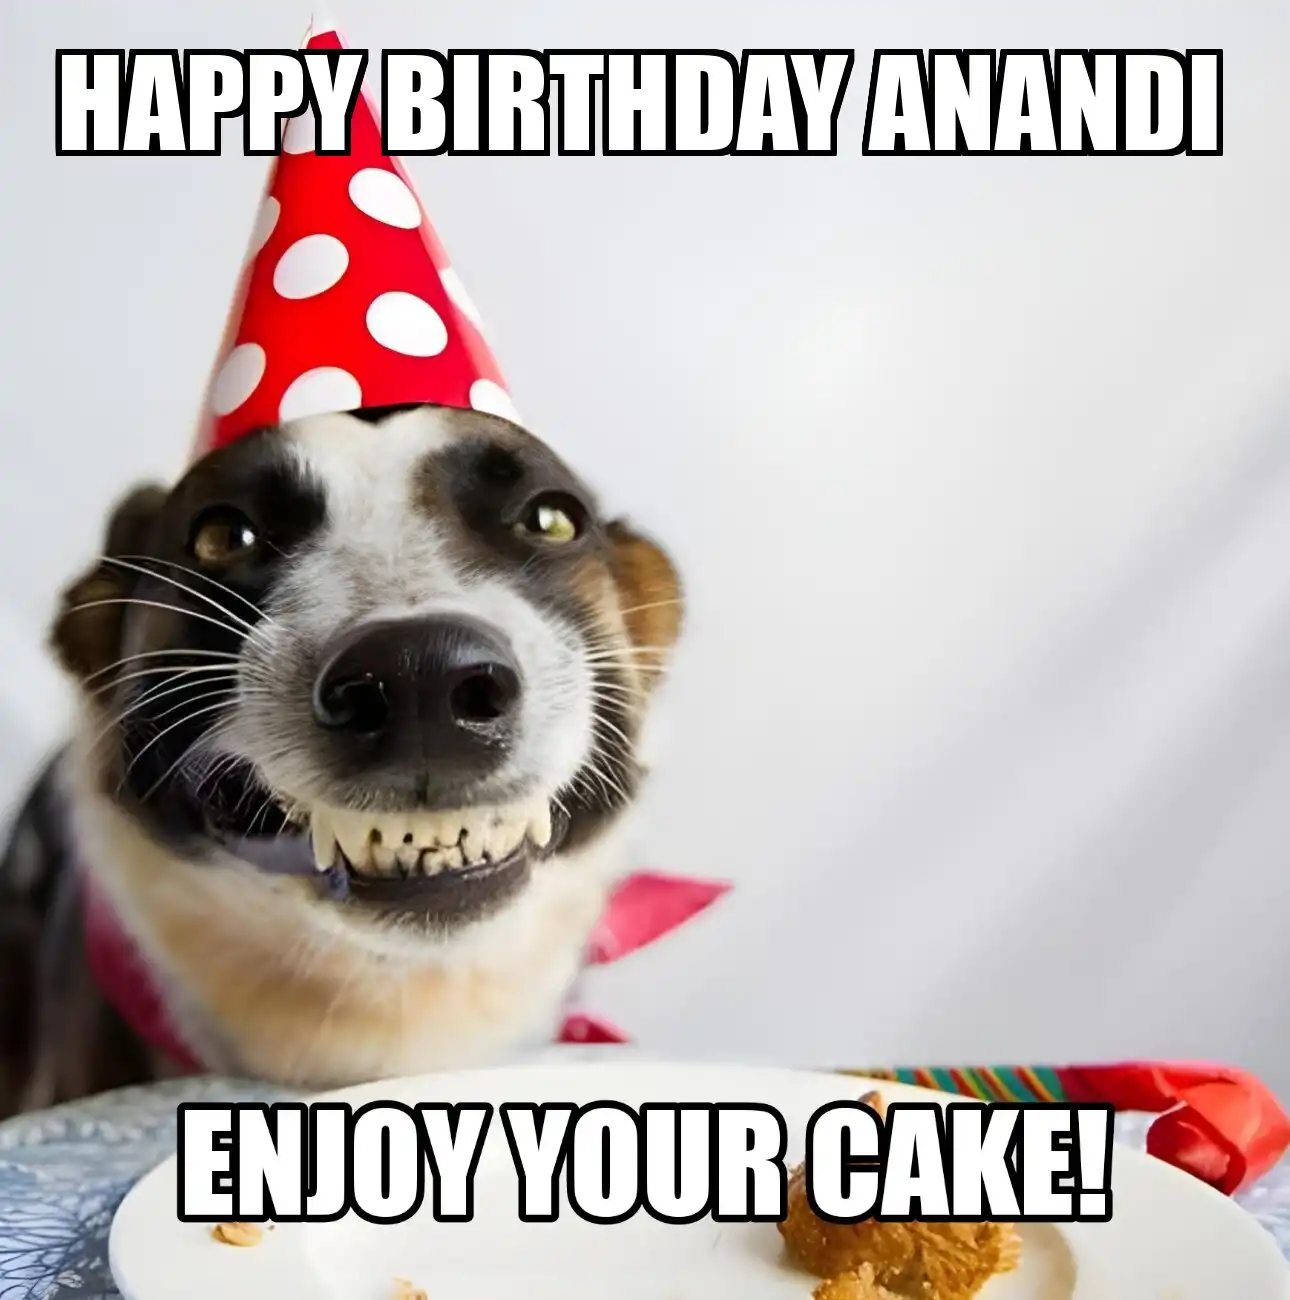 Happy Birthday Anandi Enjoy Your Cake Dog Meme